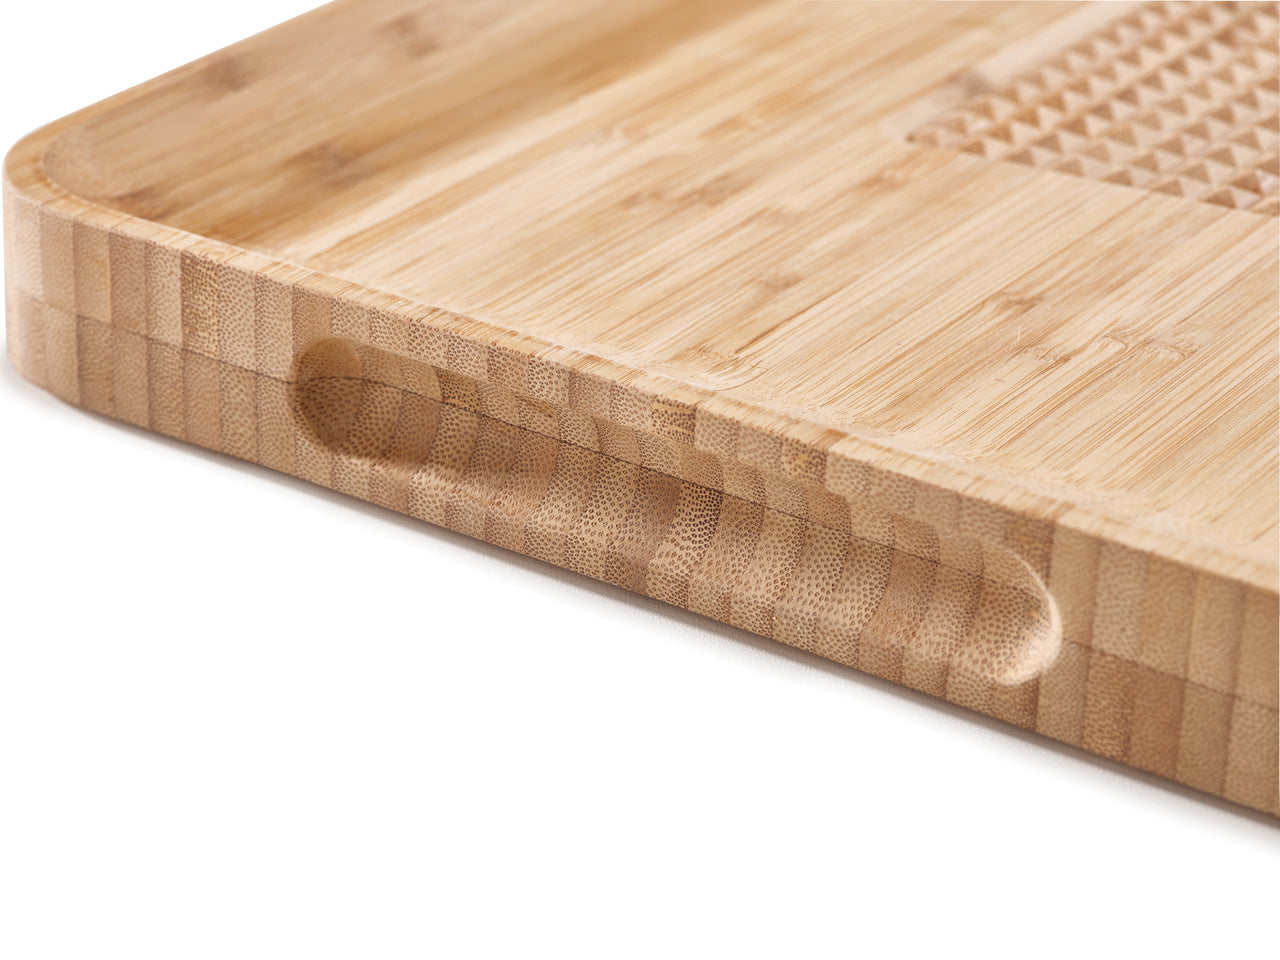 Cut & Carve Bamboo Chopping Board